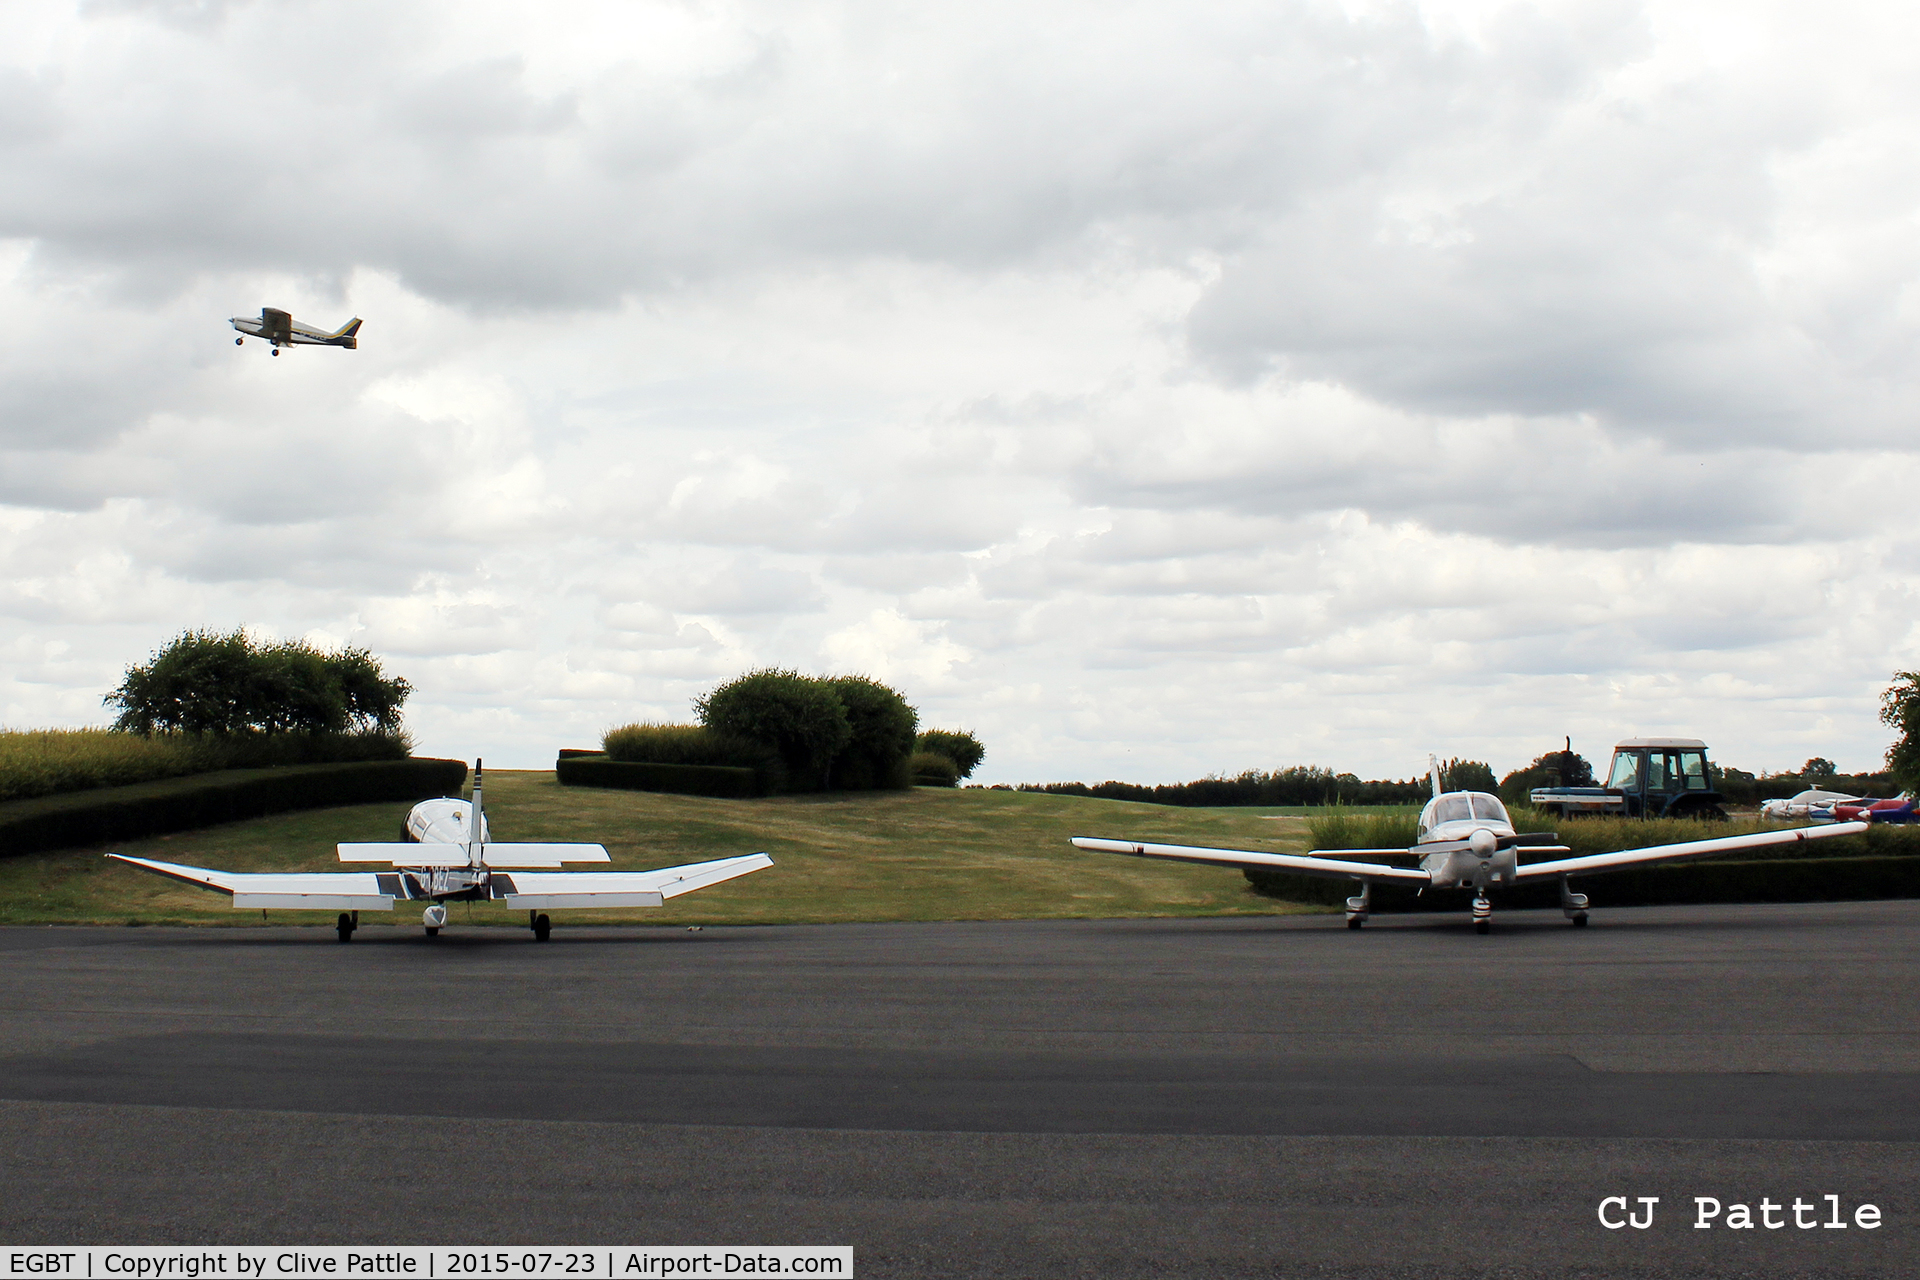 Turweston Aerodrome Airport, Turweston, England United Kingdom (EGBT) - Apron view at Turweston EGBT